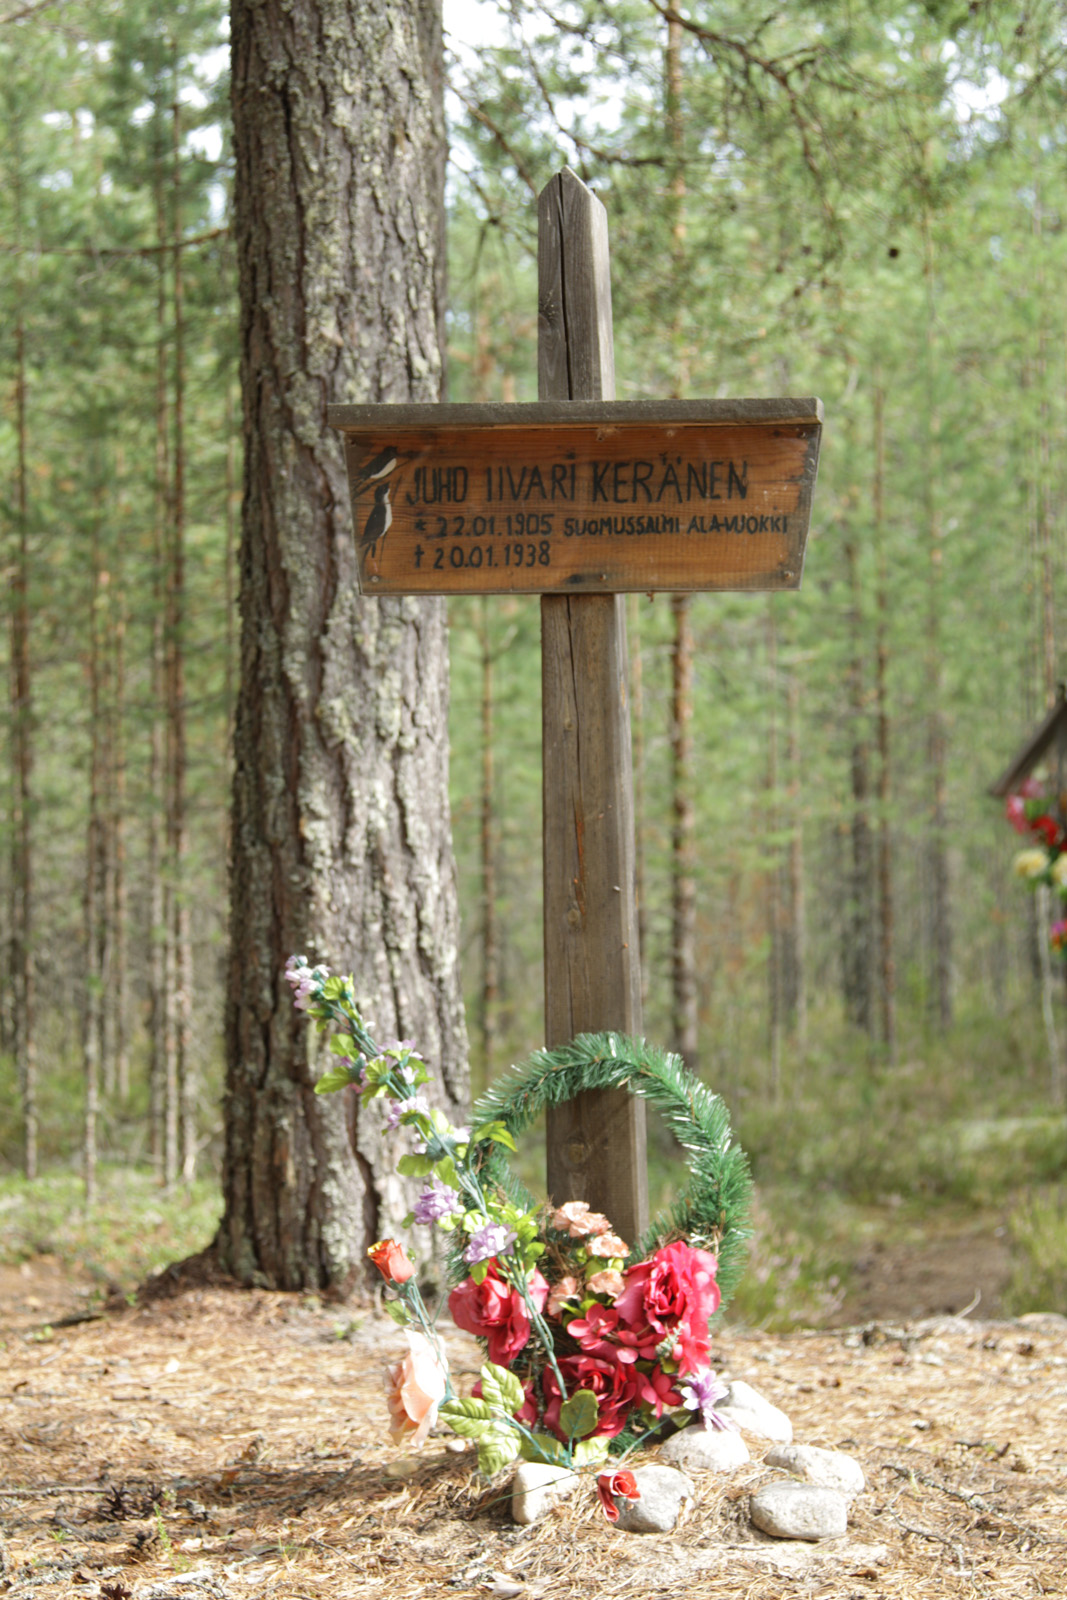 Памятный знак Juho Iivari Keränen. Фото 04.08.2011.